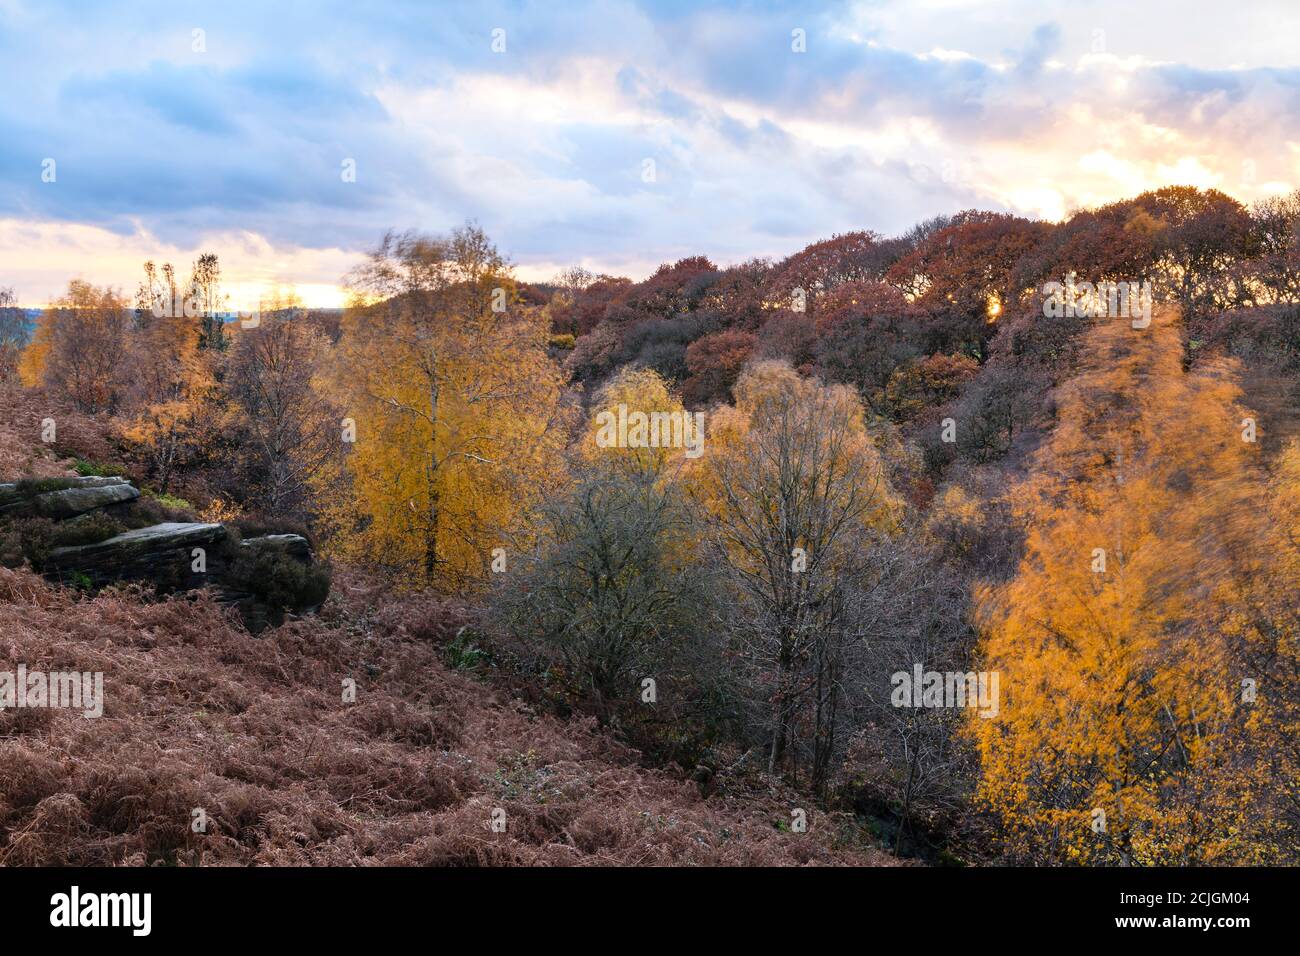 Colori autunnali, valle paesaggistica boschiva rurale, alberi su ripide colline, foglie colorate e cielo tramonto - Shipley Glen, West Yorkshire, Inghilterra, Regno Unito. Foto Stock